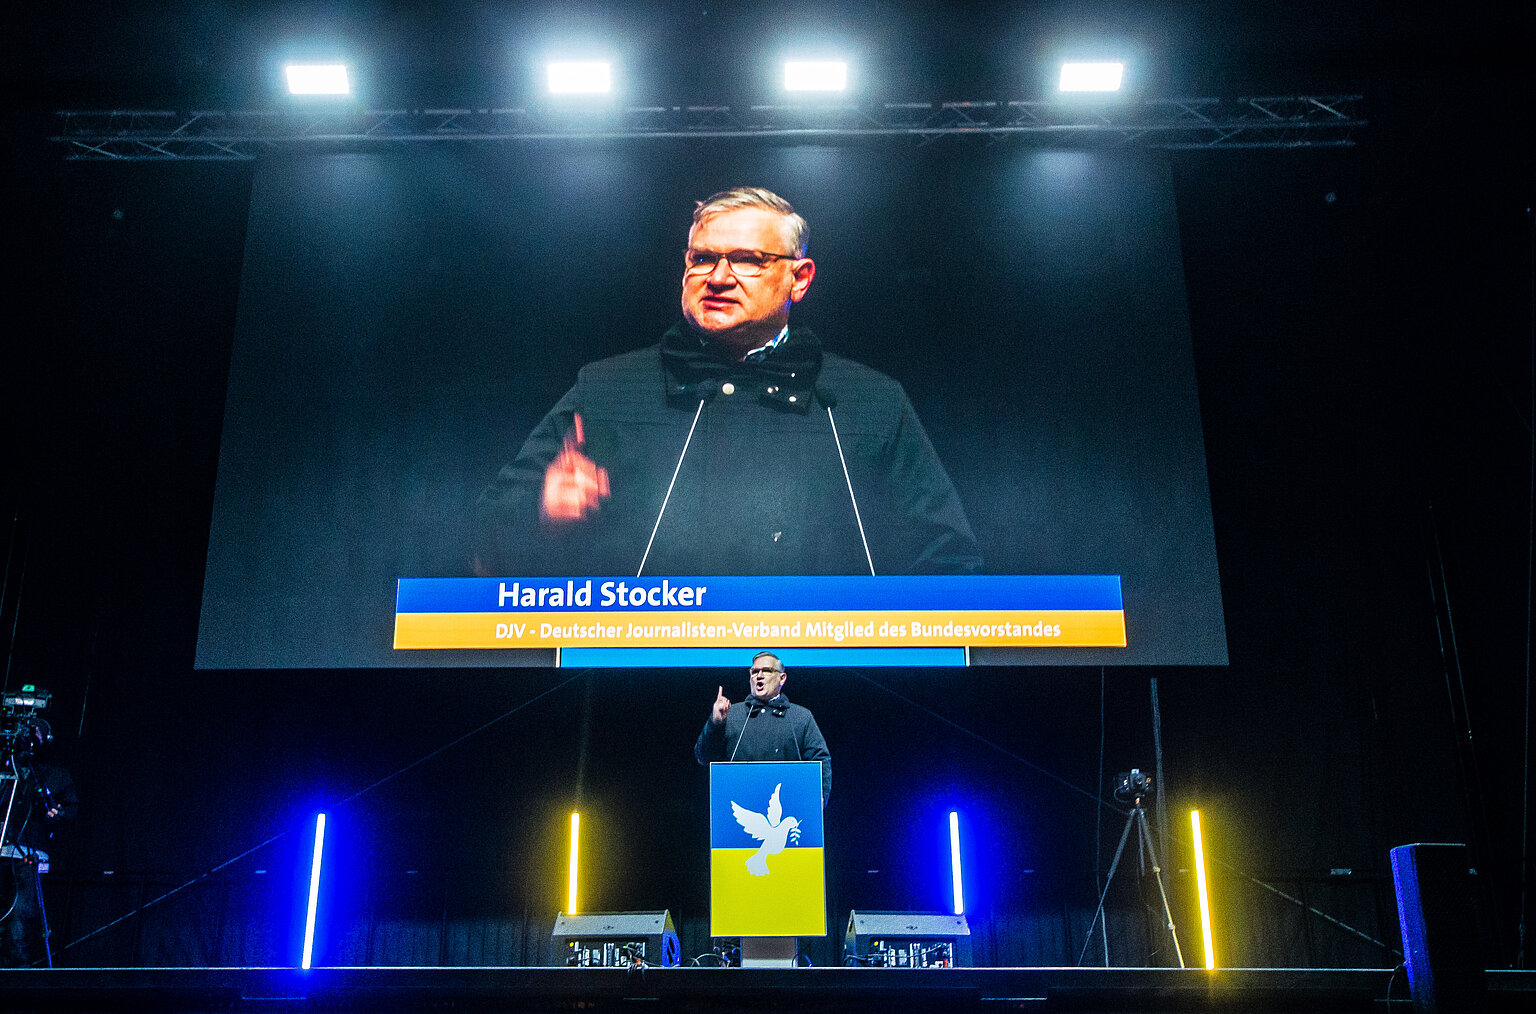 Harald Stocker als Redner bei der Gemeinsame Demonstration „Frieden in Europa, Solidarität mit der Ukraine!“ am 2. März 2022 in München – BJV-/DJV-Kollege Harald Stocker: „Die Pressefreiheit ist die wichtigste Infrastruktur in der Demokratie!“